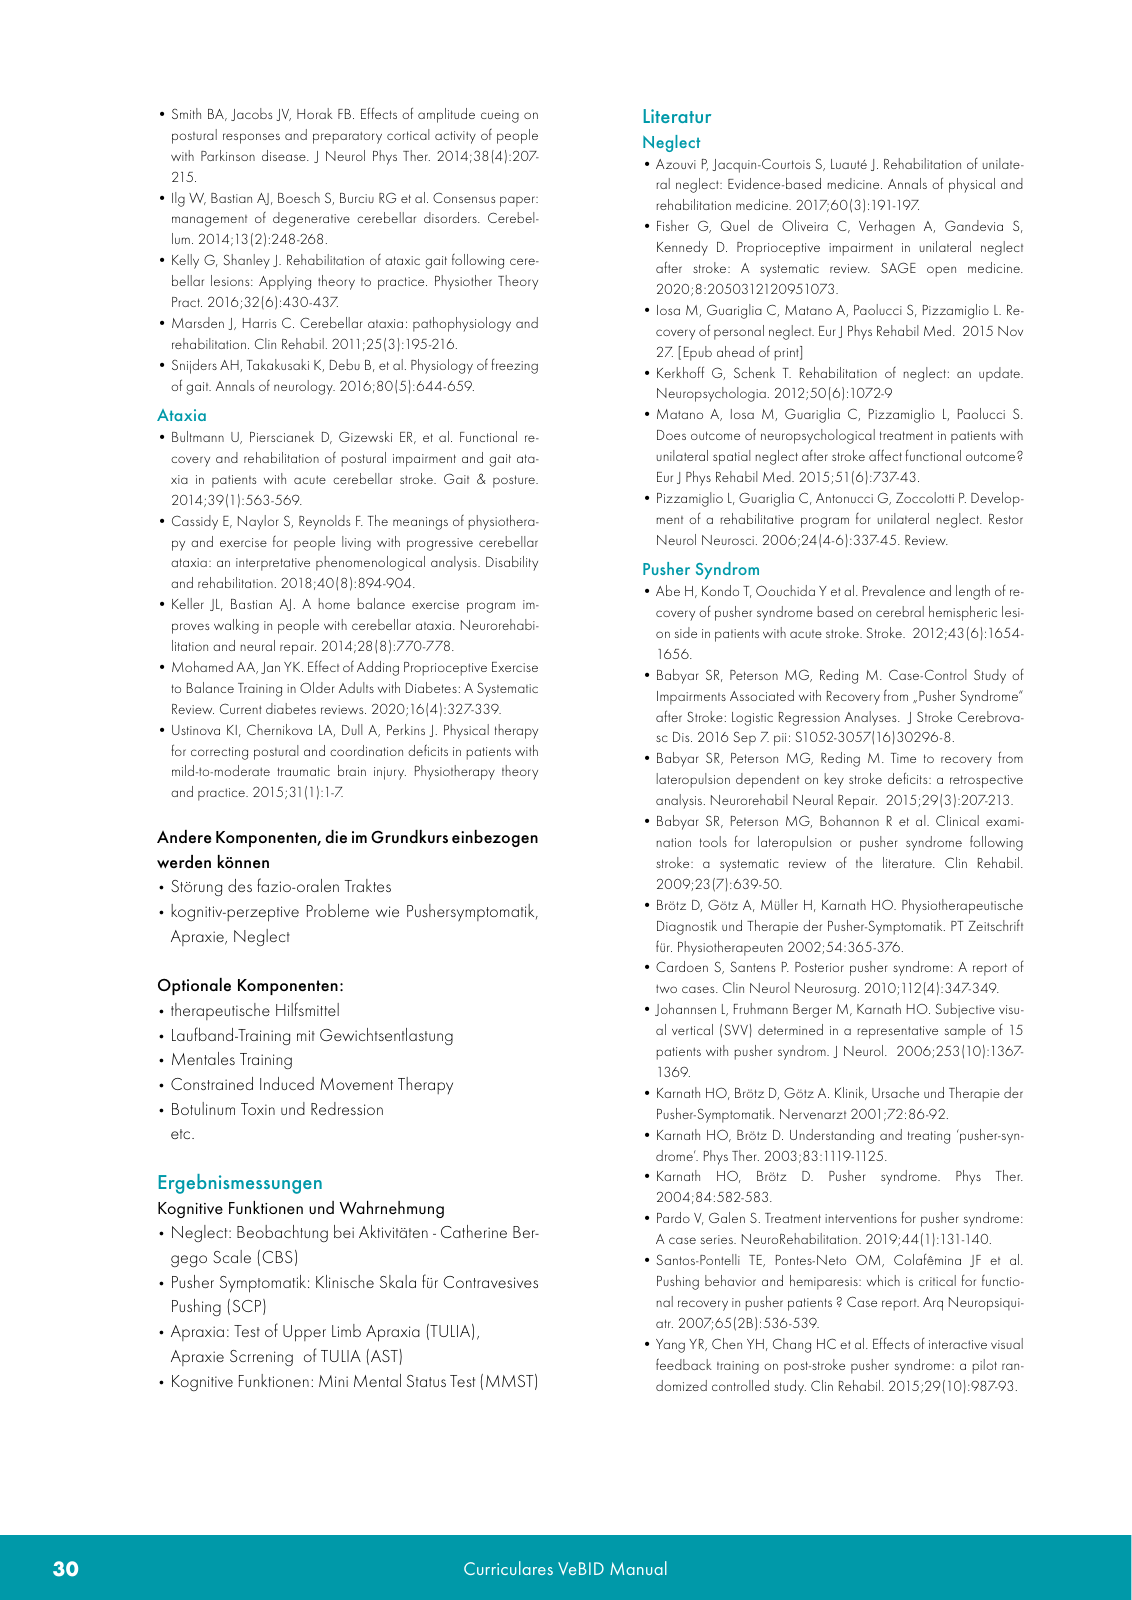 Vorschau VeBID Curriculum 2022 Seite 30